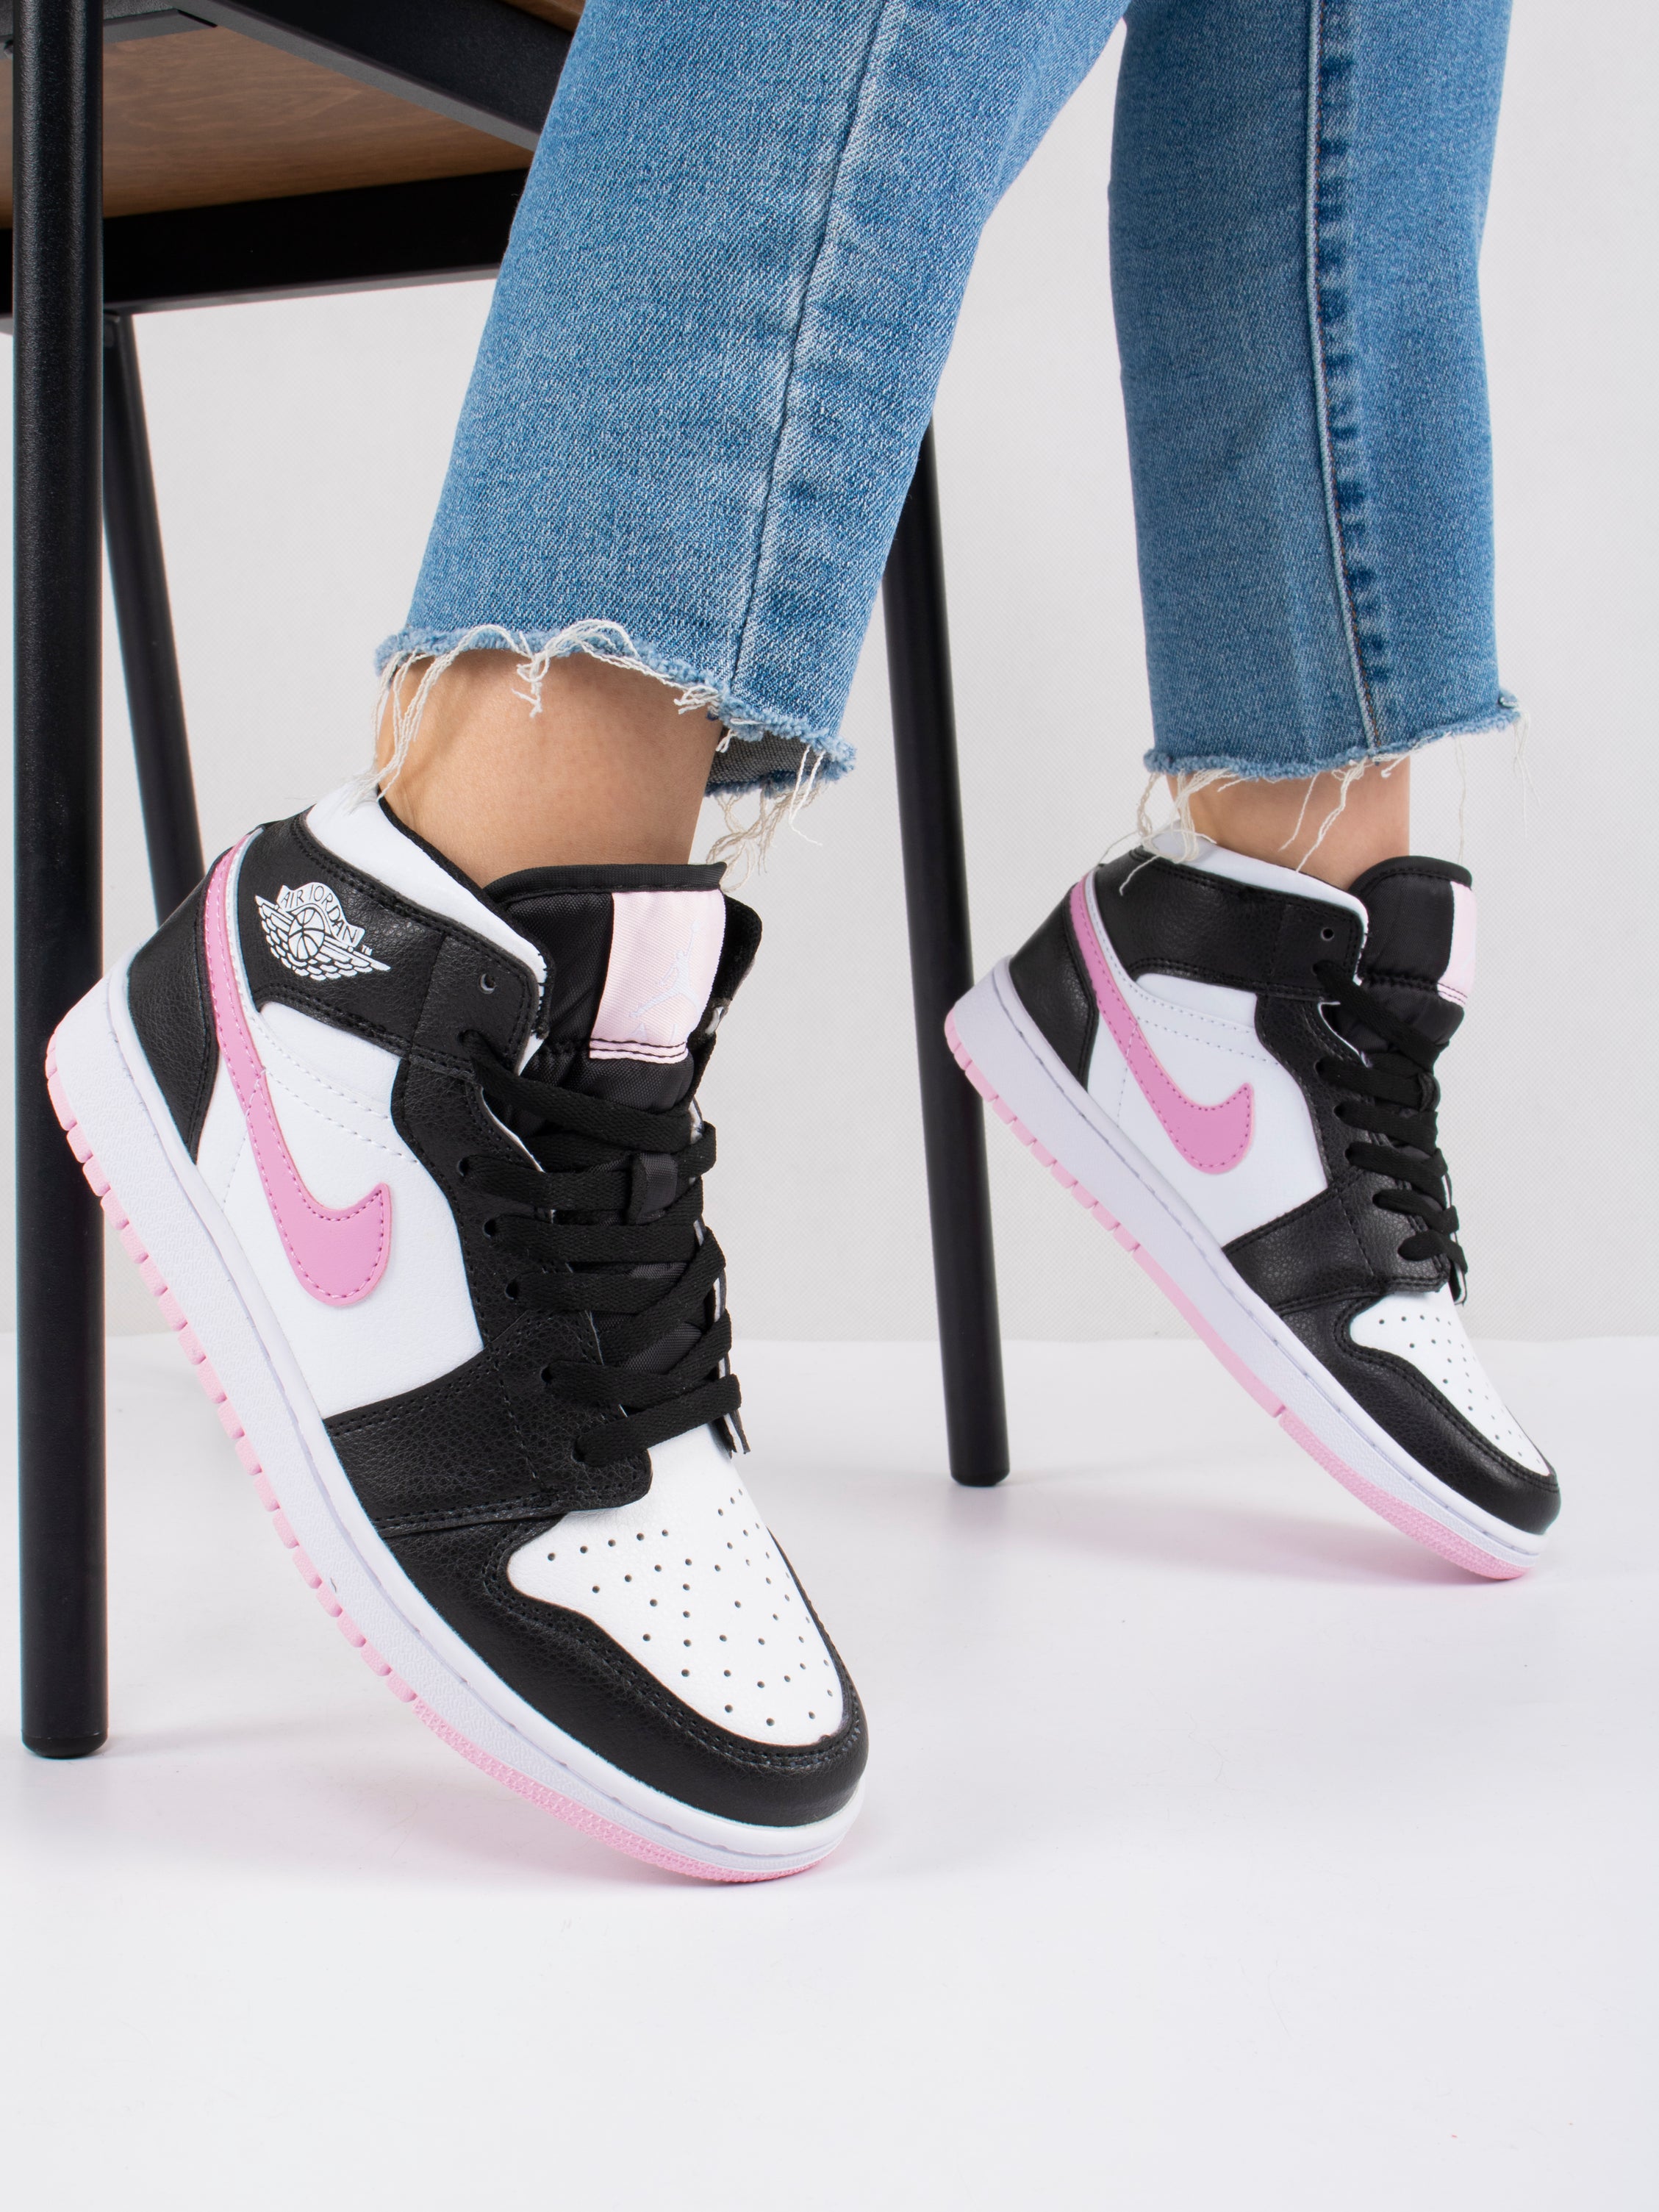 Nike Air Jordan 1 Mid Artic Pink Black Light